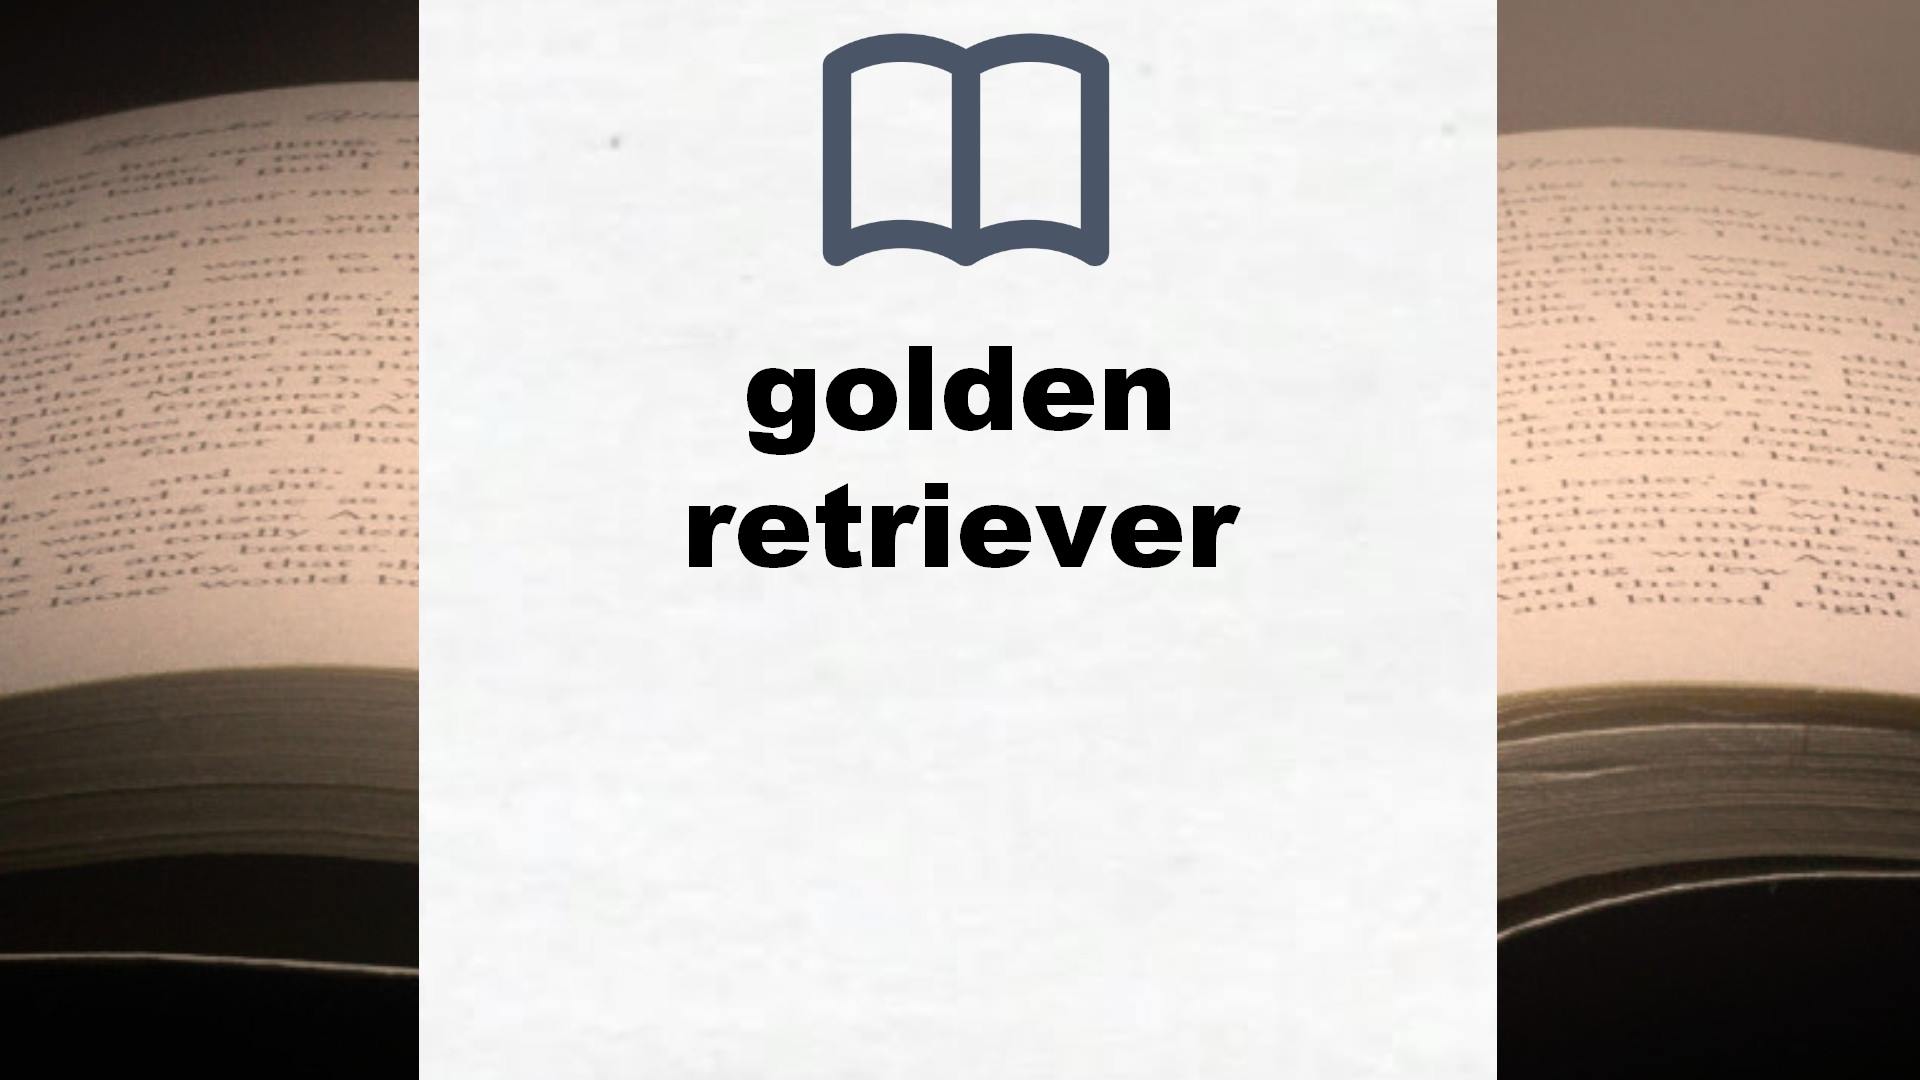 Libros sobre golden retriever